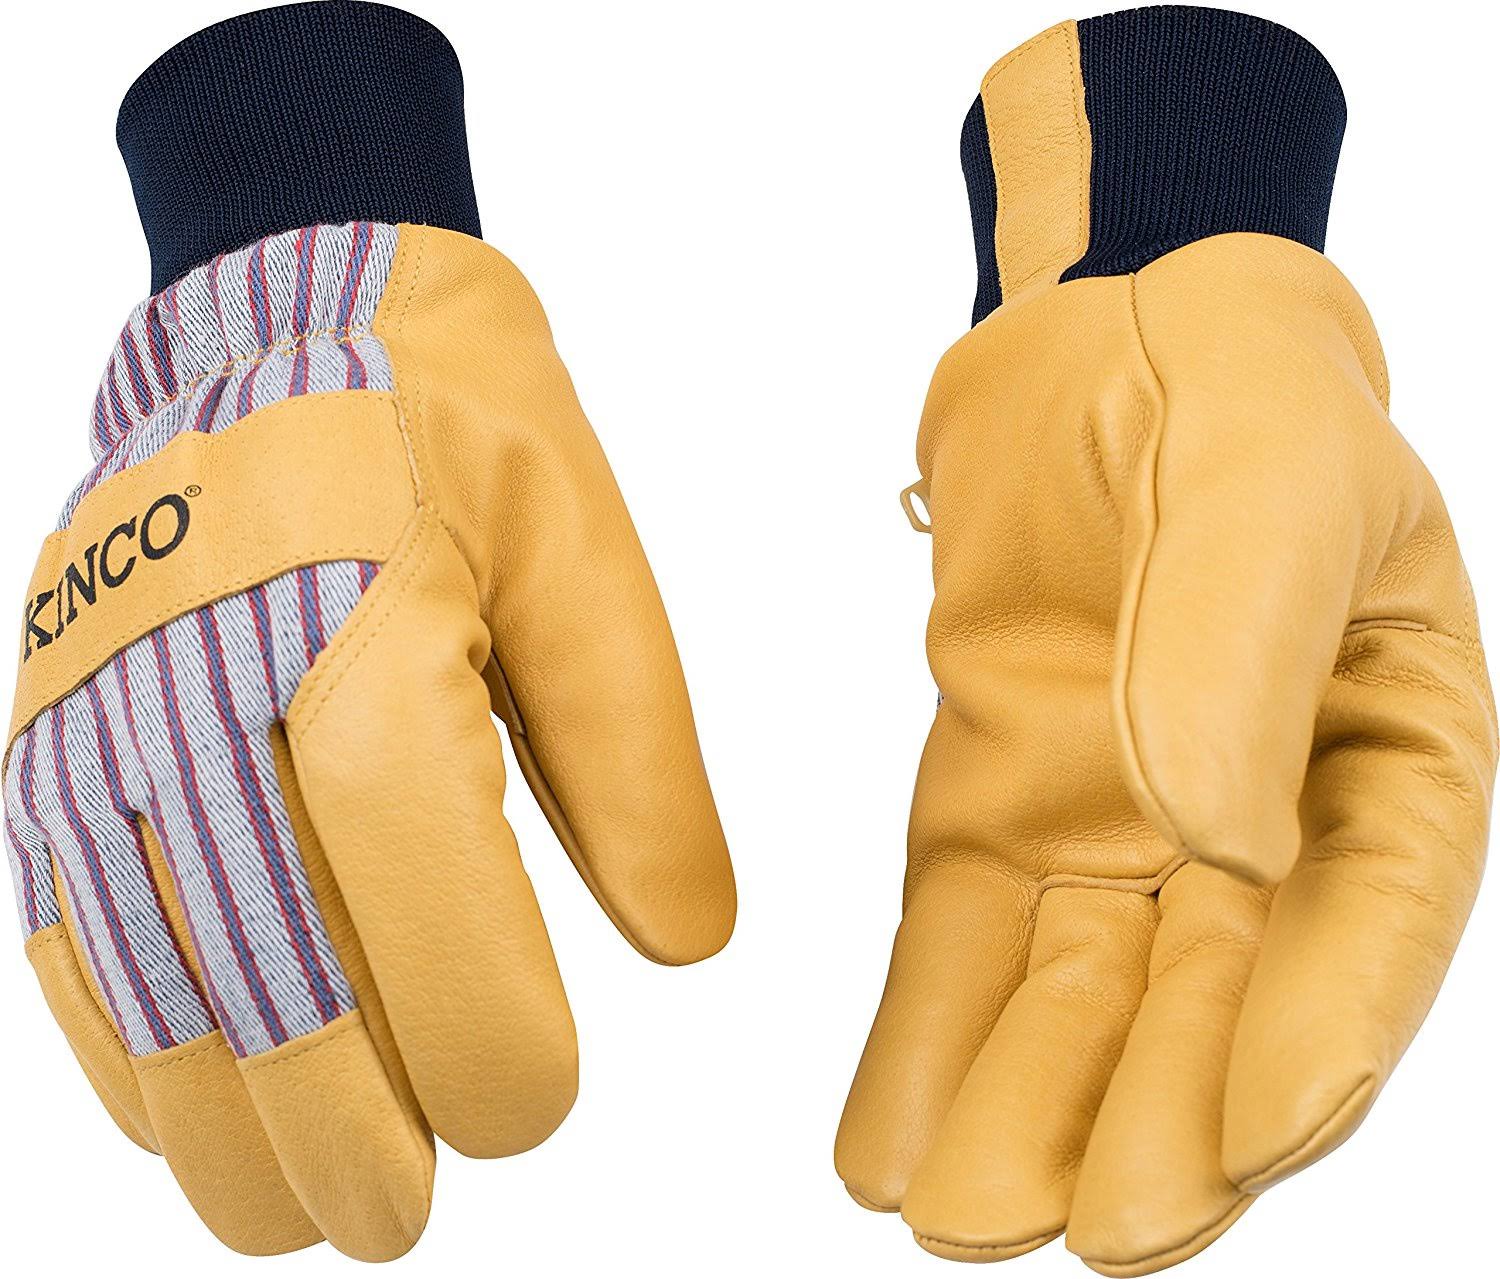 Kinco 1927kw Mens Premium Grain Pigskin Leather Palm Gloves - Medium, Heat